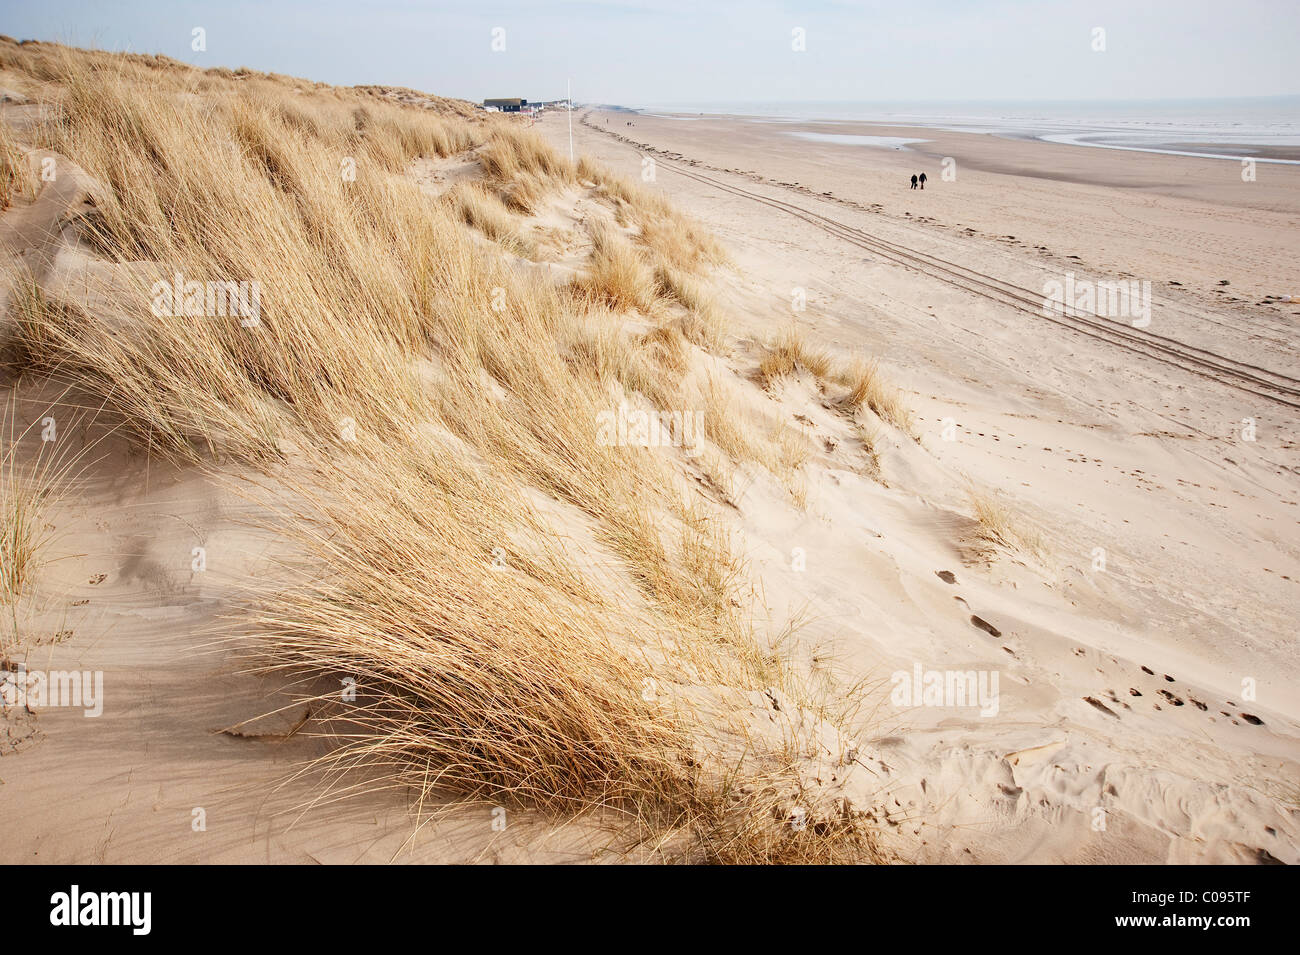 marram grass sand dunes camber sands beach Stock Photo